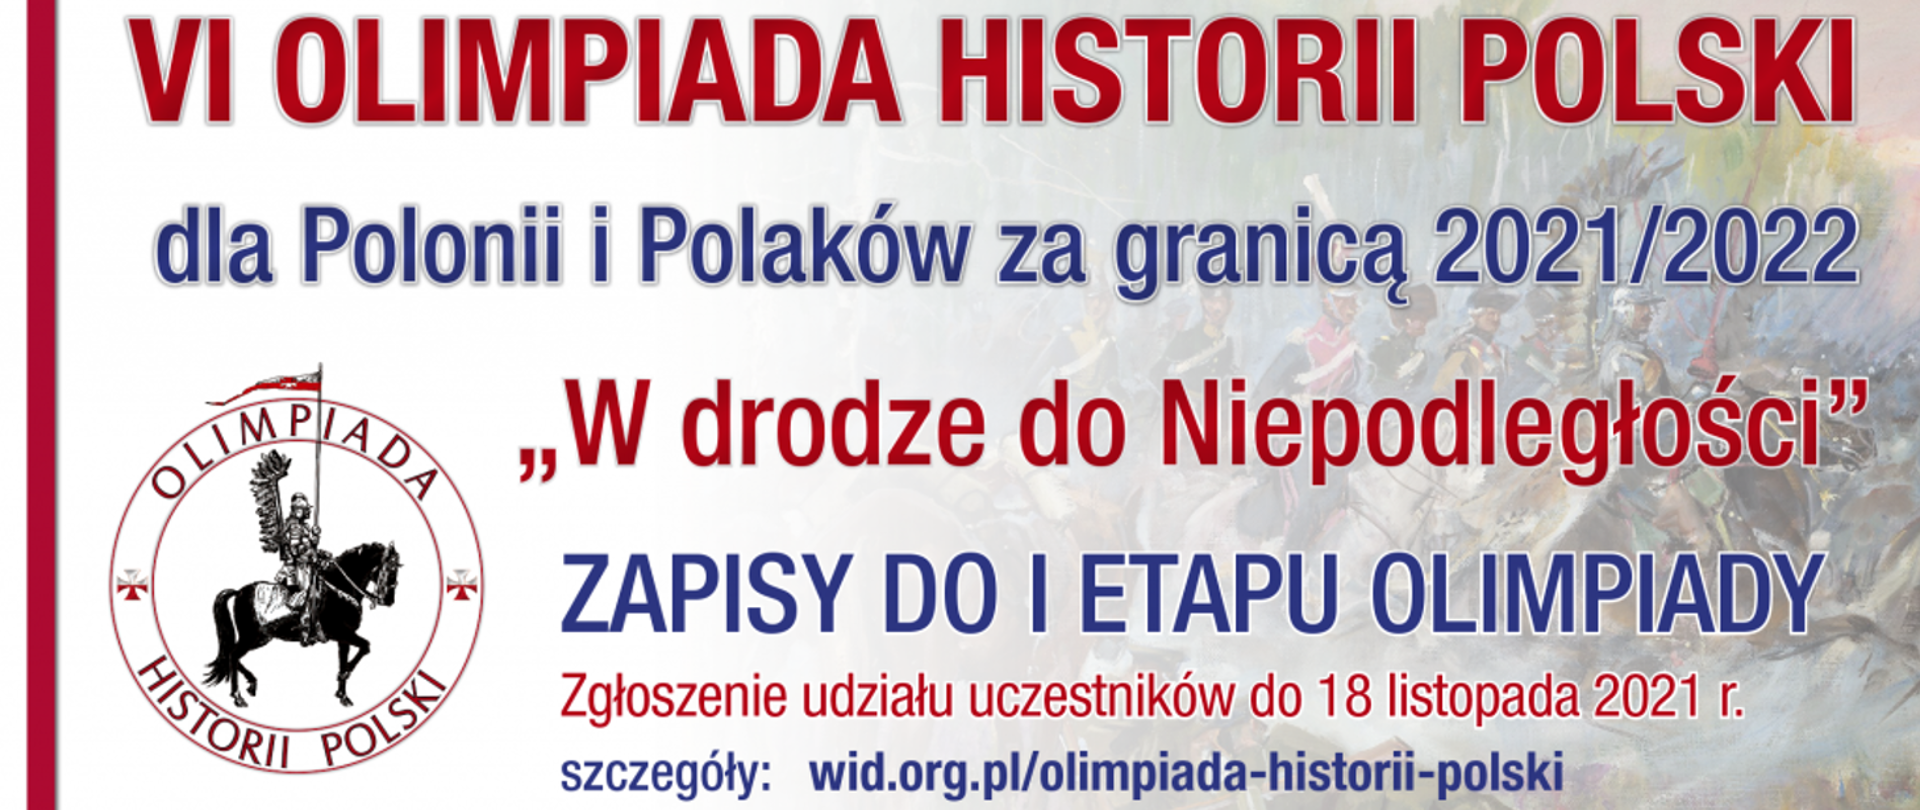 VI edycja Olimpiady Historii Polski dla Polonii i Polaków za granicą 20212022 